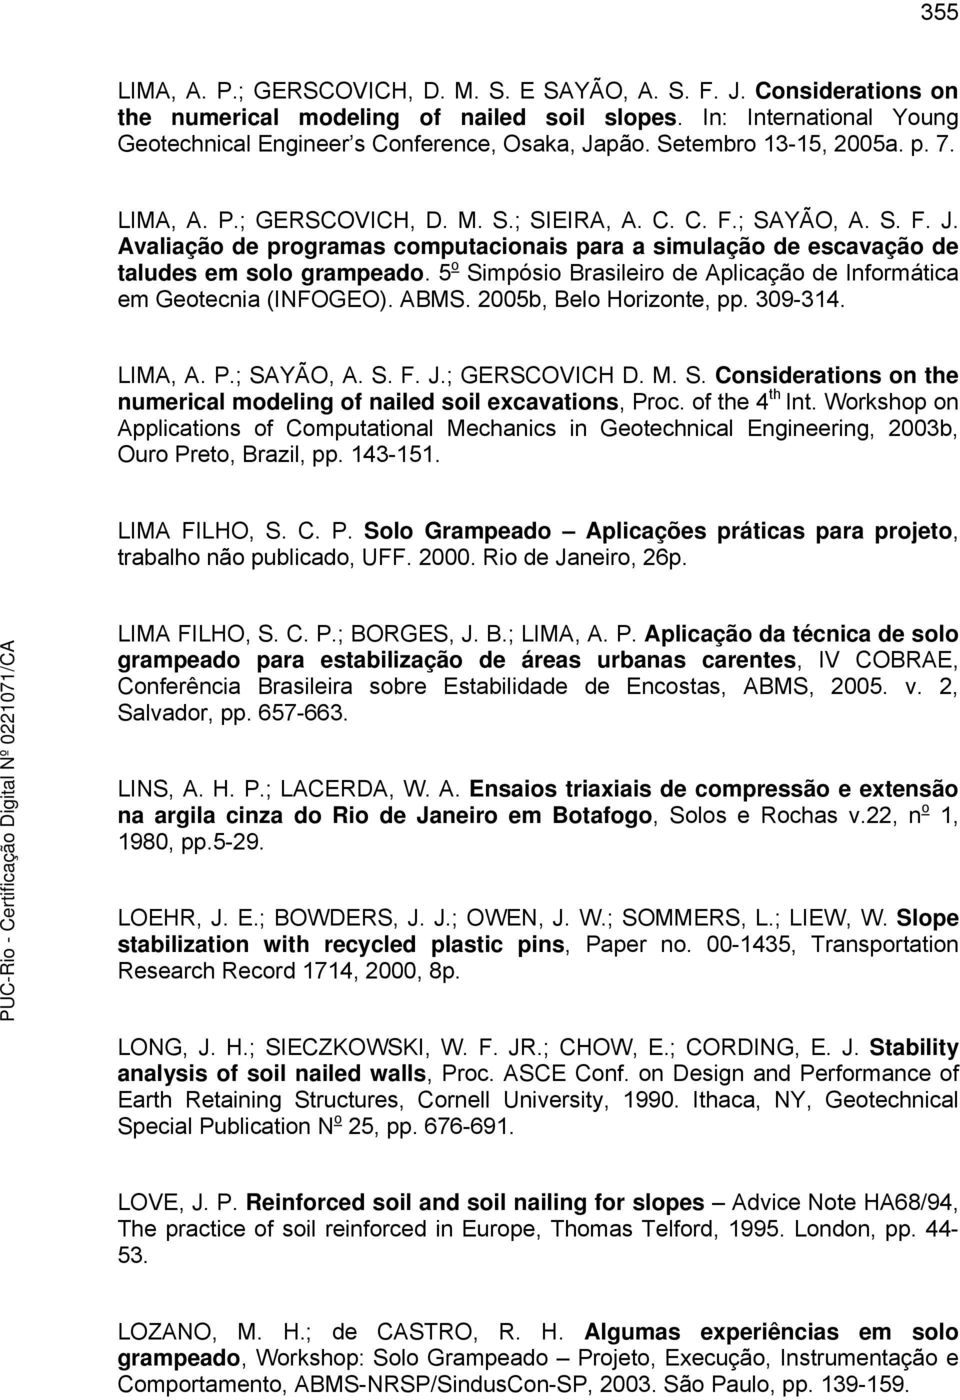 5 o Simpósio Brasileiro de Aplicação de Informática em Geotecnia (INFOGEO). ABMS. 25b, Belo Horizonte, pp. 39-314. LIMA, A. P.; SAYÃO, A. S. F. J.; GERSCOVICH D. M. S. Considerations on the numerical modeling of nailed soil excavations, Proc.